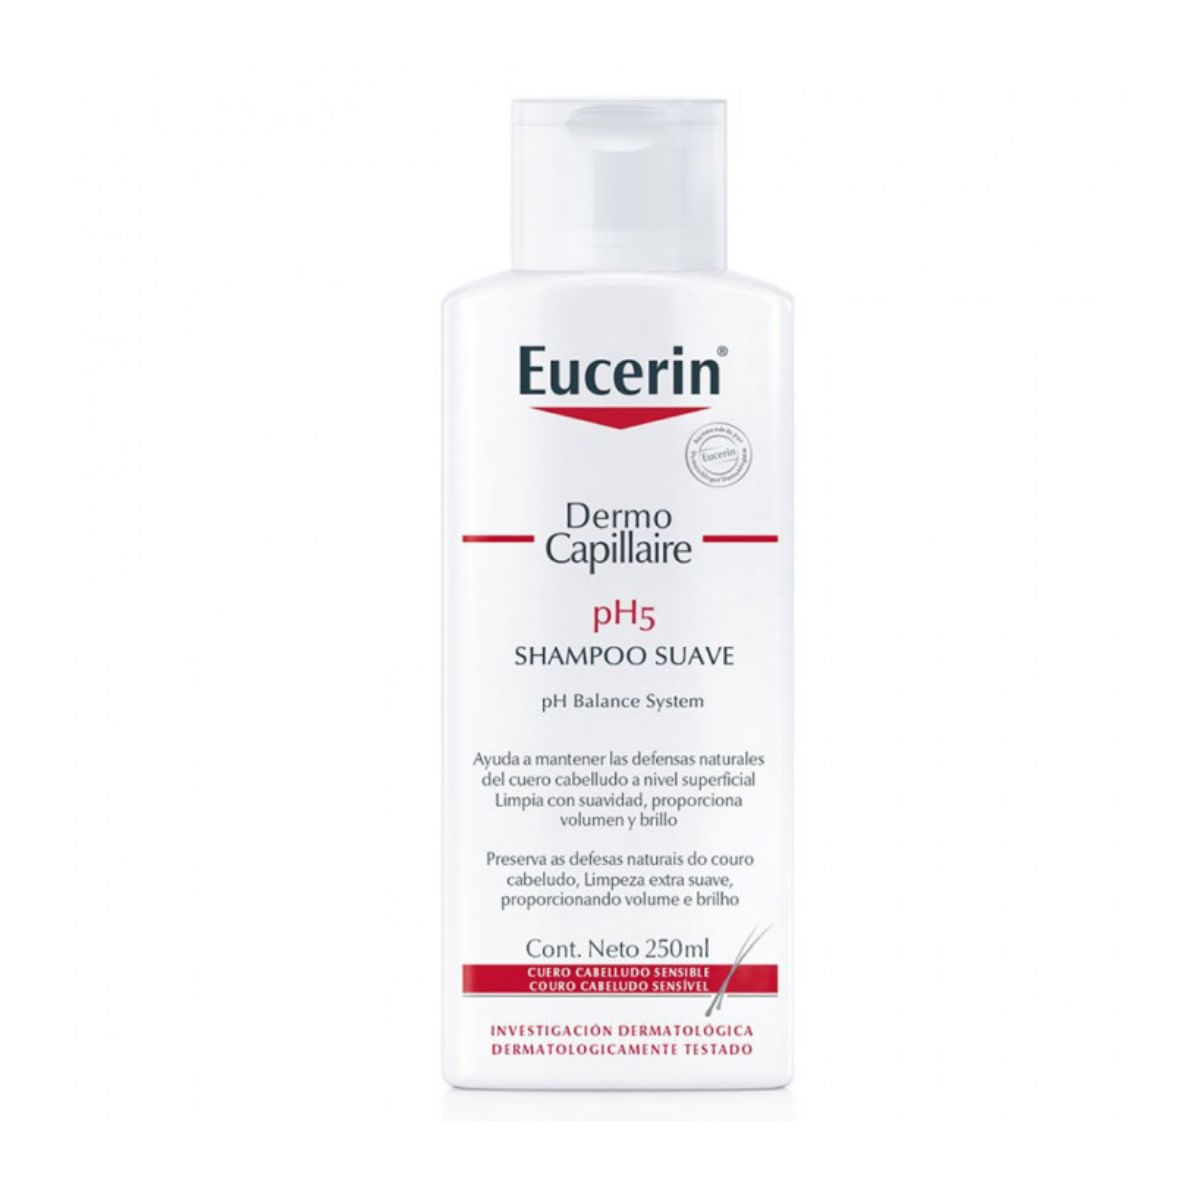 eucerin-ph5-shampoo-capillaire-250ml-1.jpg